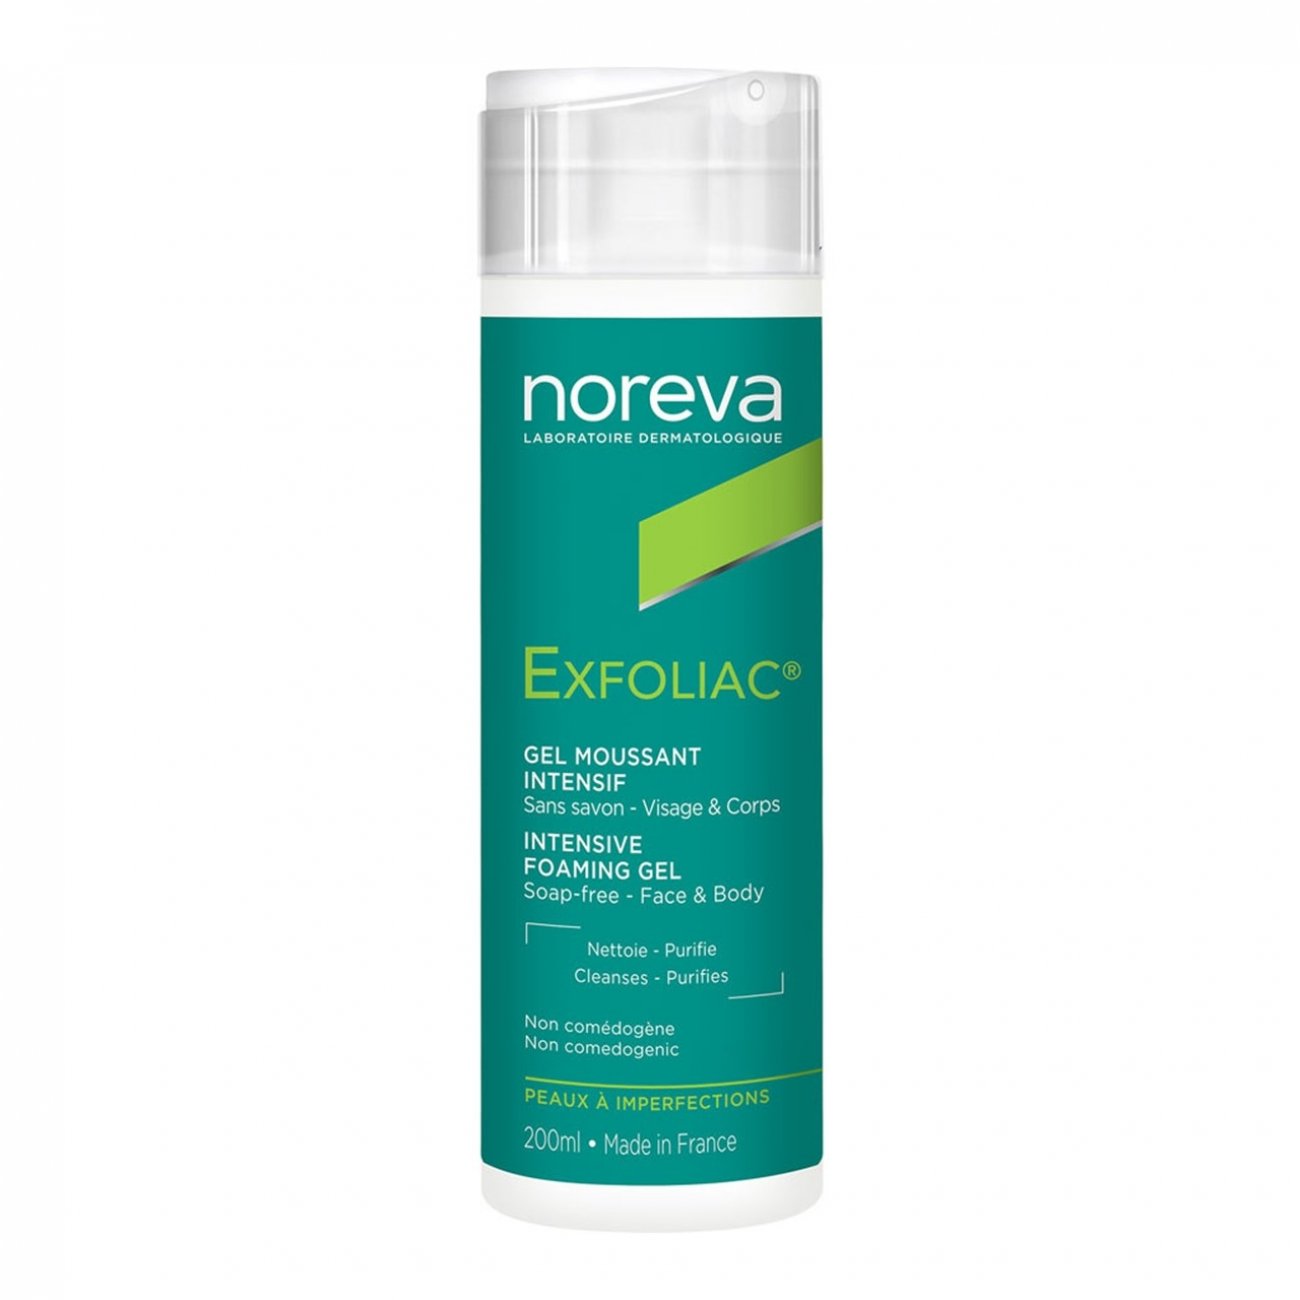 Noreva Exfoliac Foaming Gel 200ml